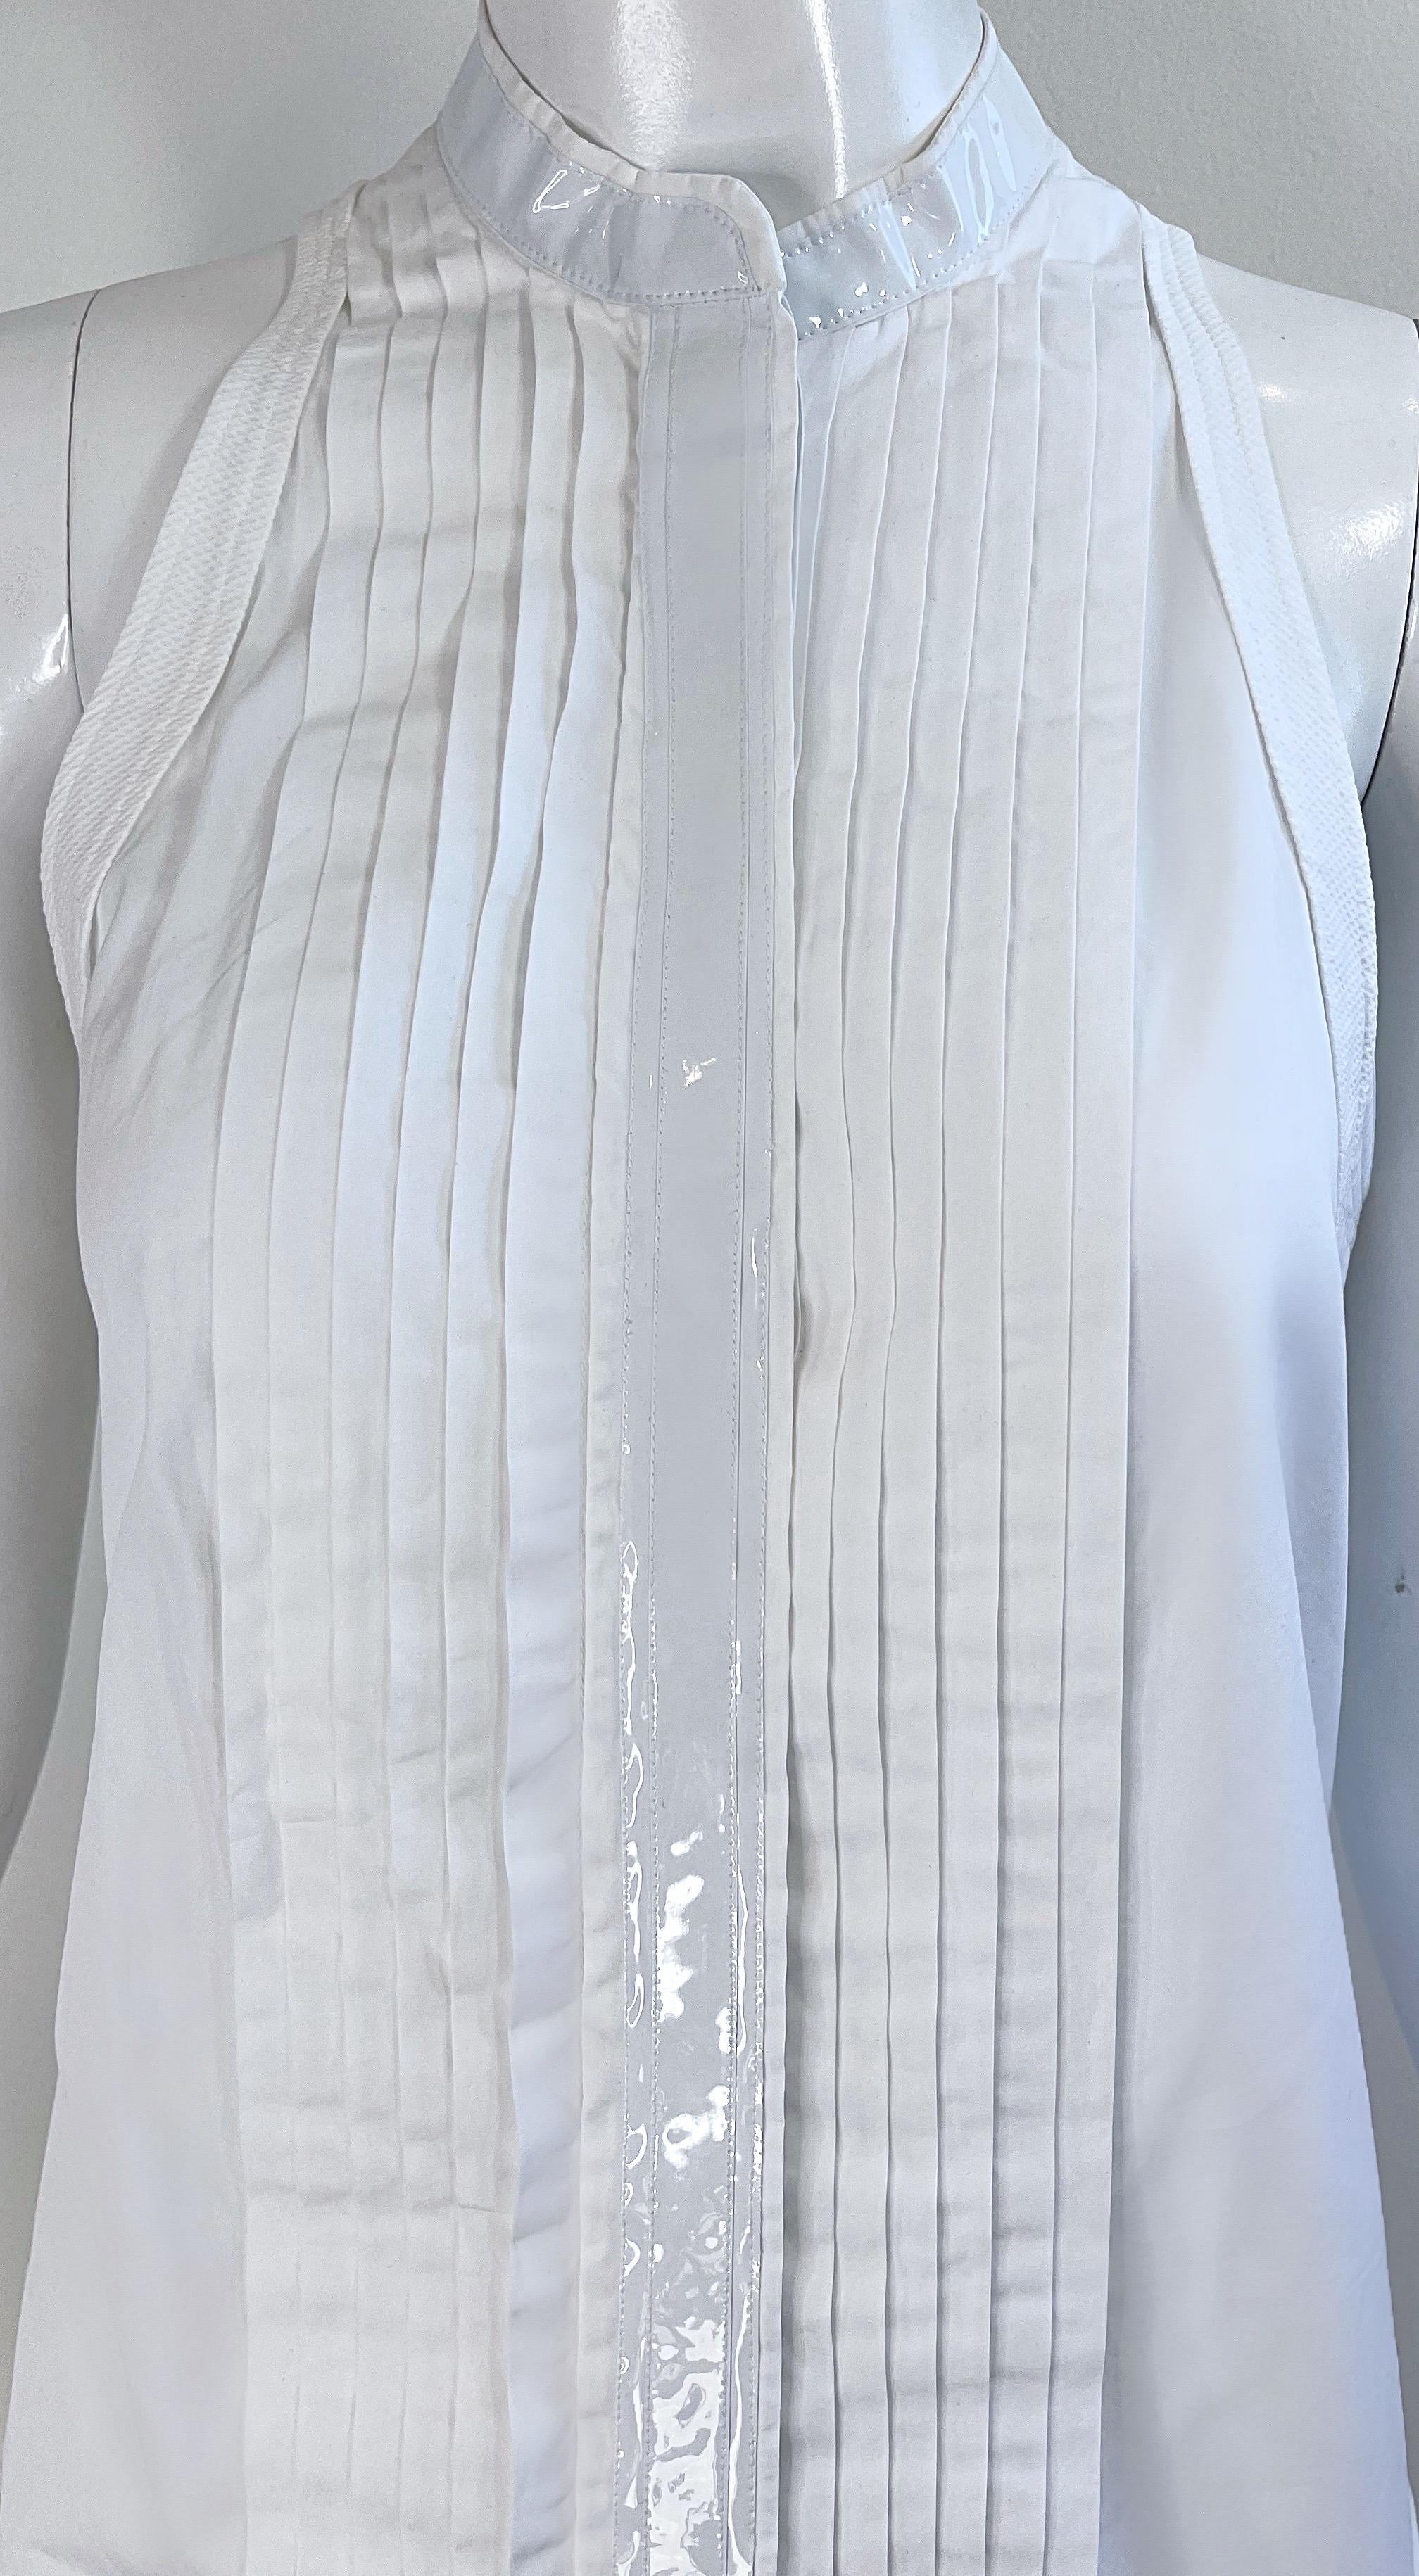 Balenciaga Spring 2007 by Nicolas Ghesquiere Size 38 / 8 White Tuxedo Dress  For Sale 10